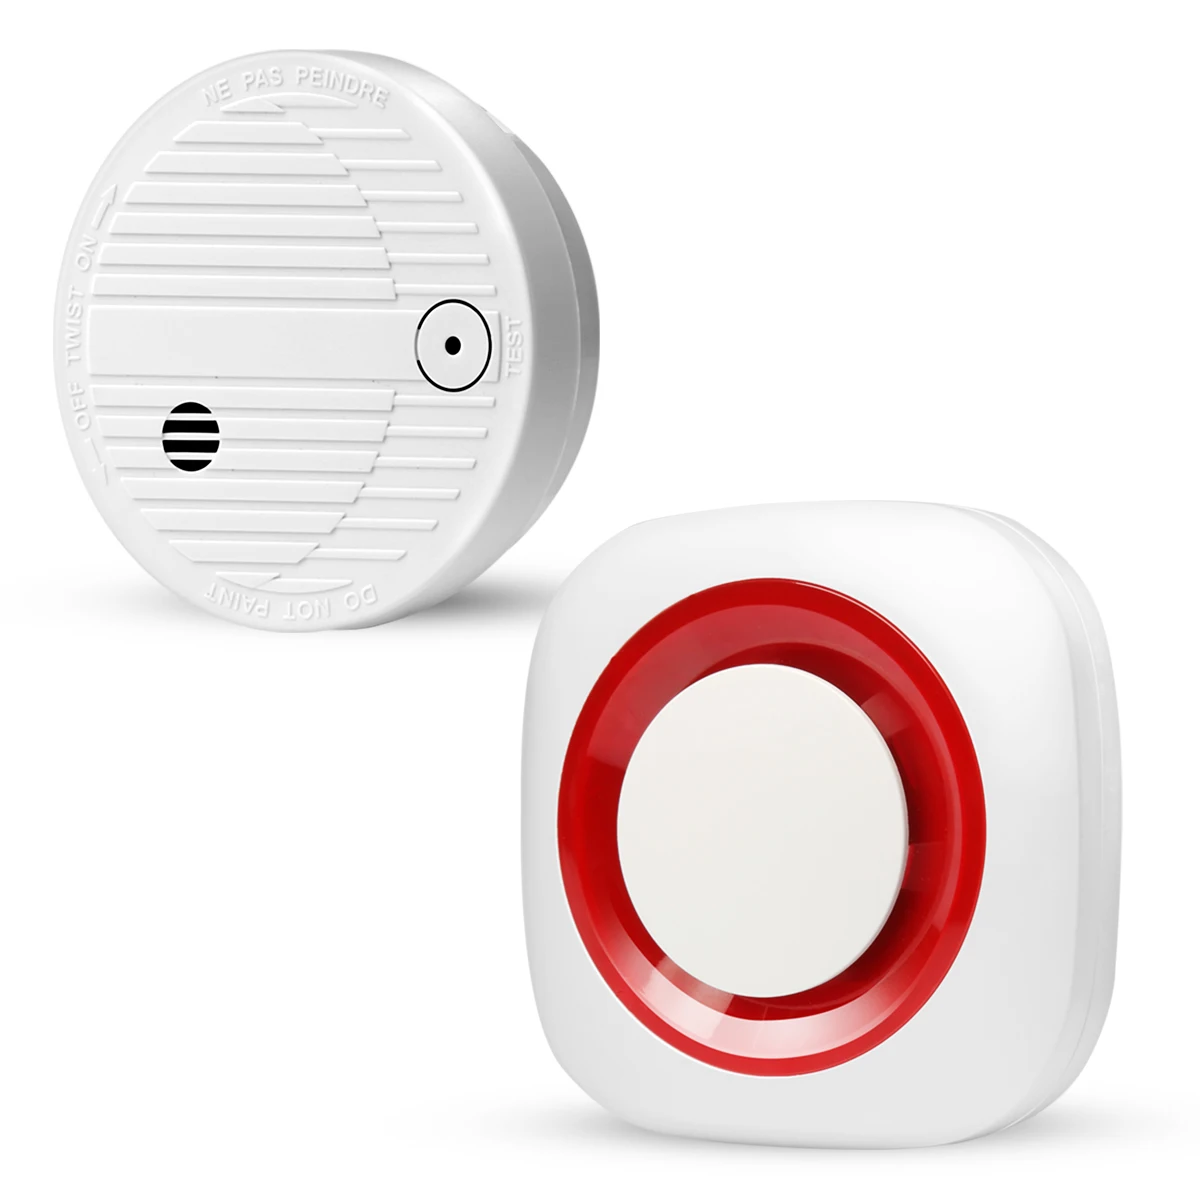 New Design Portable Intelligent GSM Smoke Sensor Alarm System with Fire Cigarette Sensor Alert Kit for Home Safty